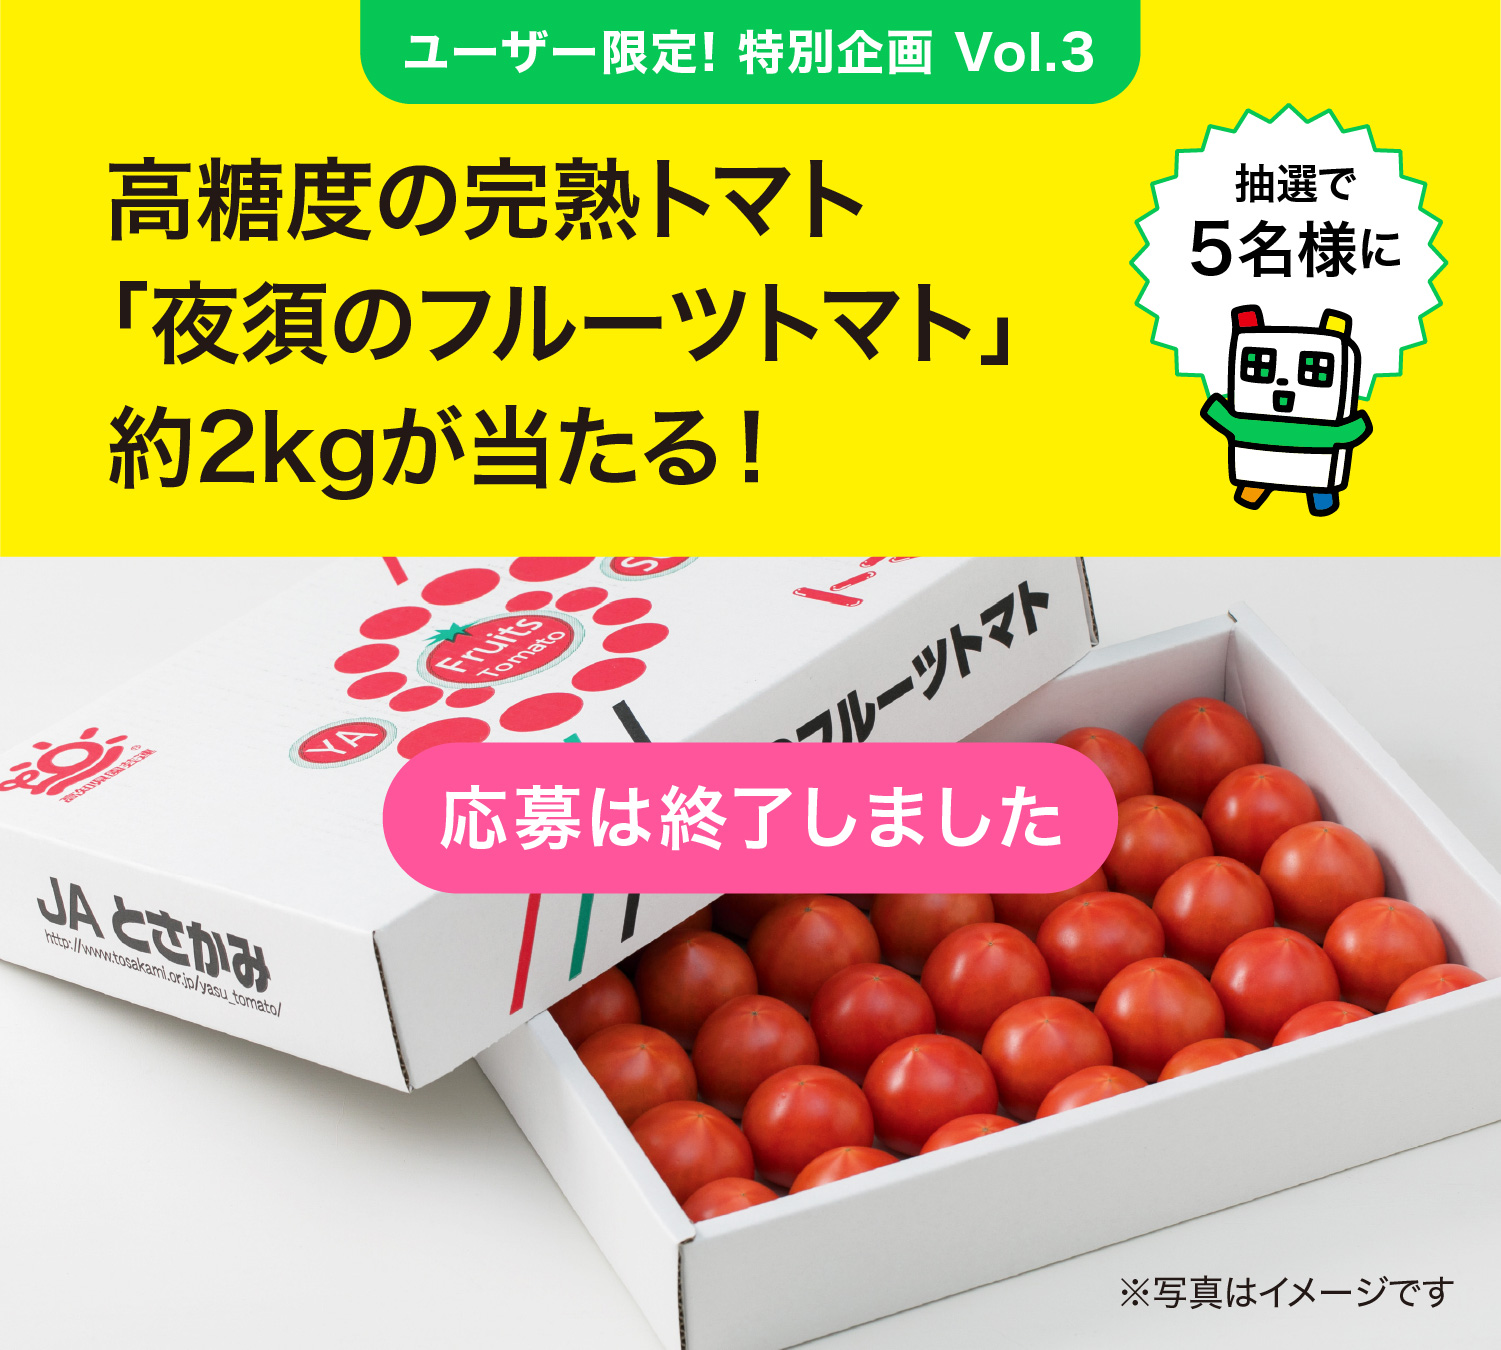 Vol.3「高糖度の完熟トマト“夜須のフルーツトマト”約2kgをプレゼント！」